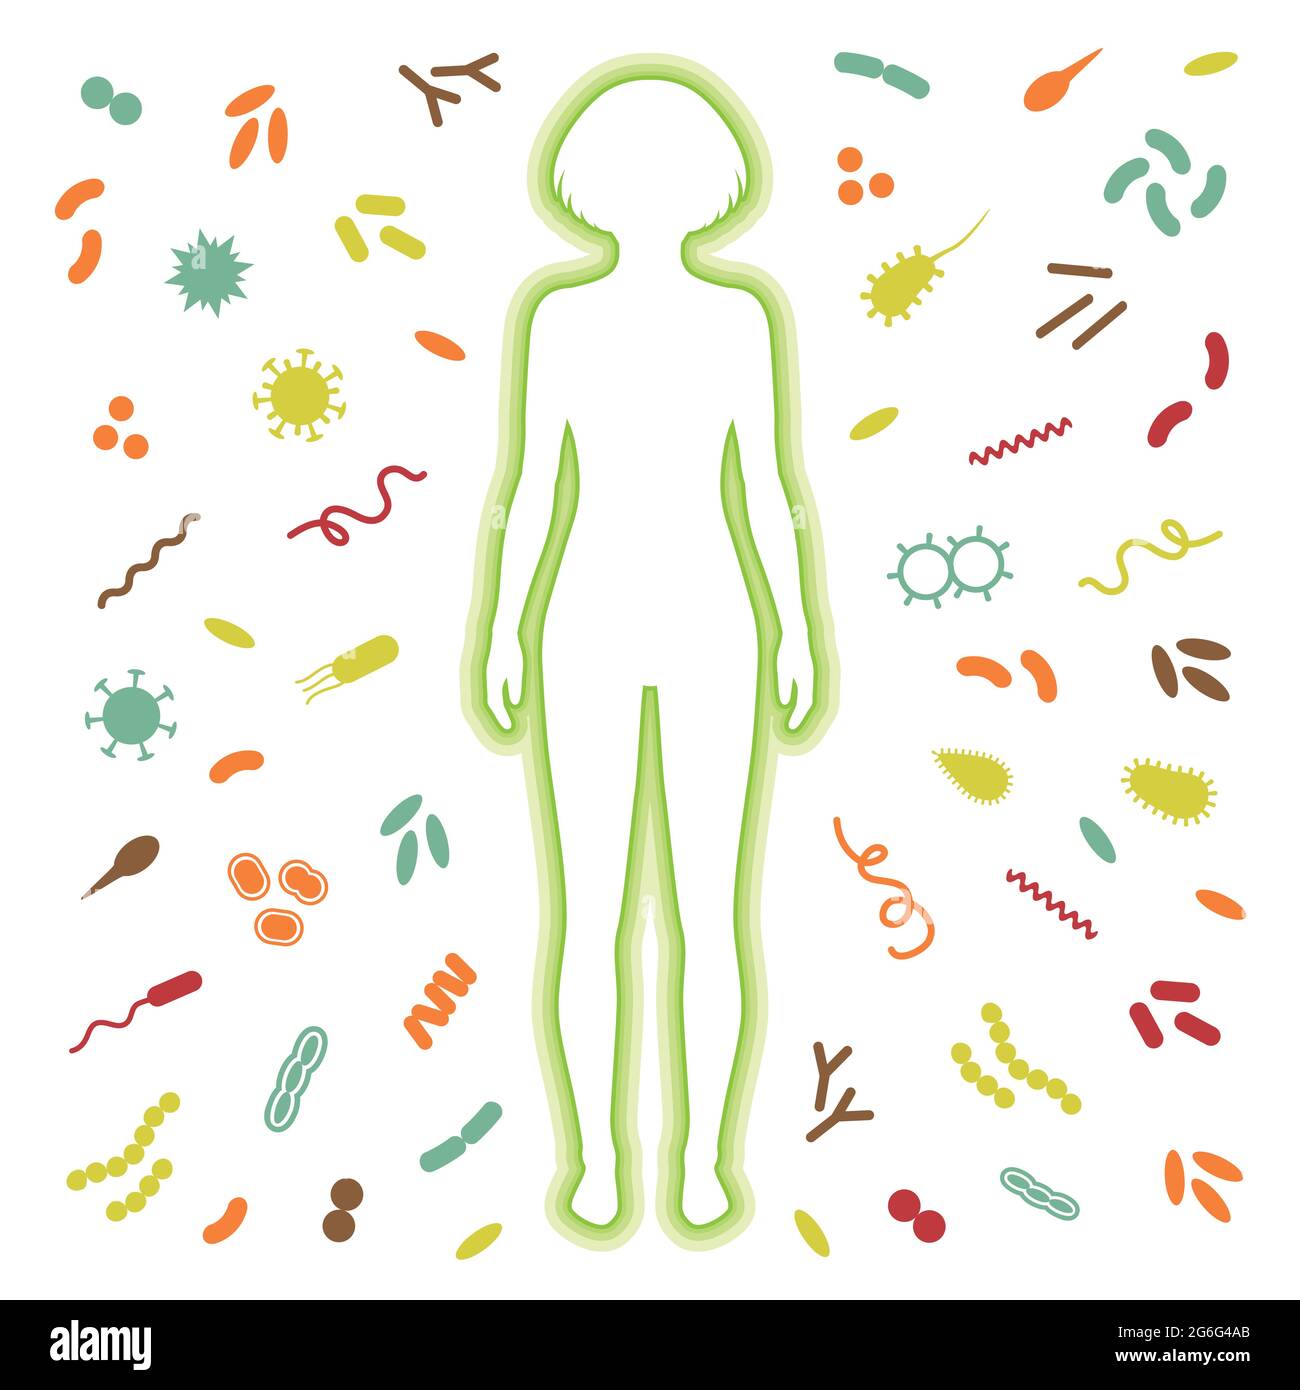 Schutz des menschlichen Immunsystems vor Viren, Bakterieninfektion,  Vektordarstellung Stock-Vektorgrafik - Alamy